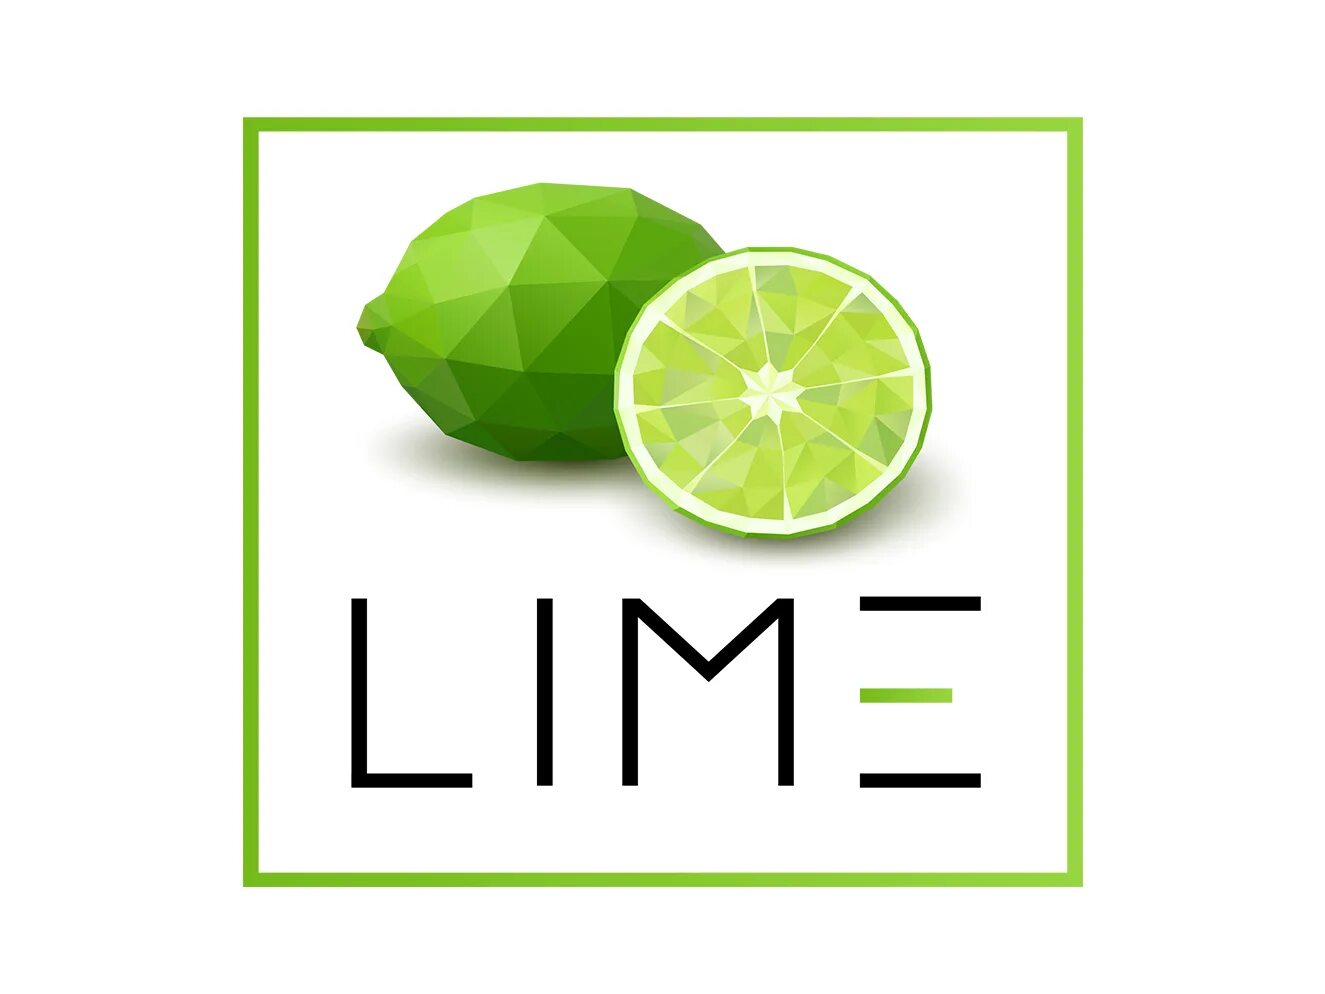 Lime shop магазин. Лайм. Лайм логотип. Лайм иллюстрация. Lime эмблема магазин.